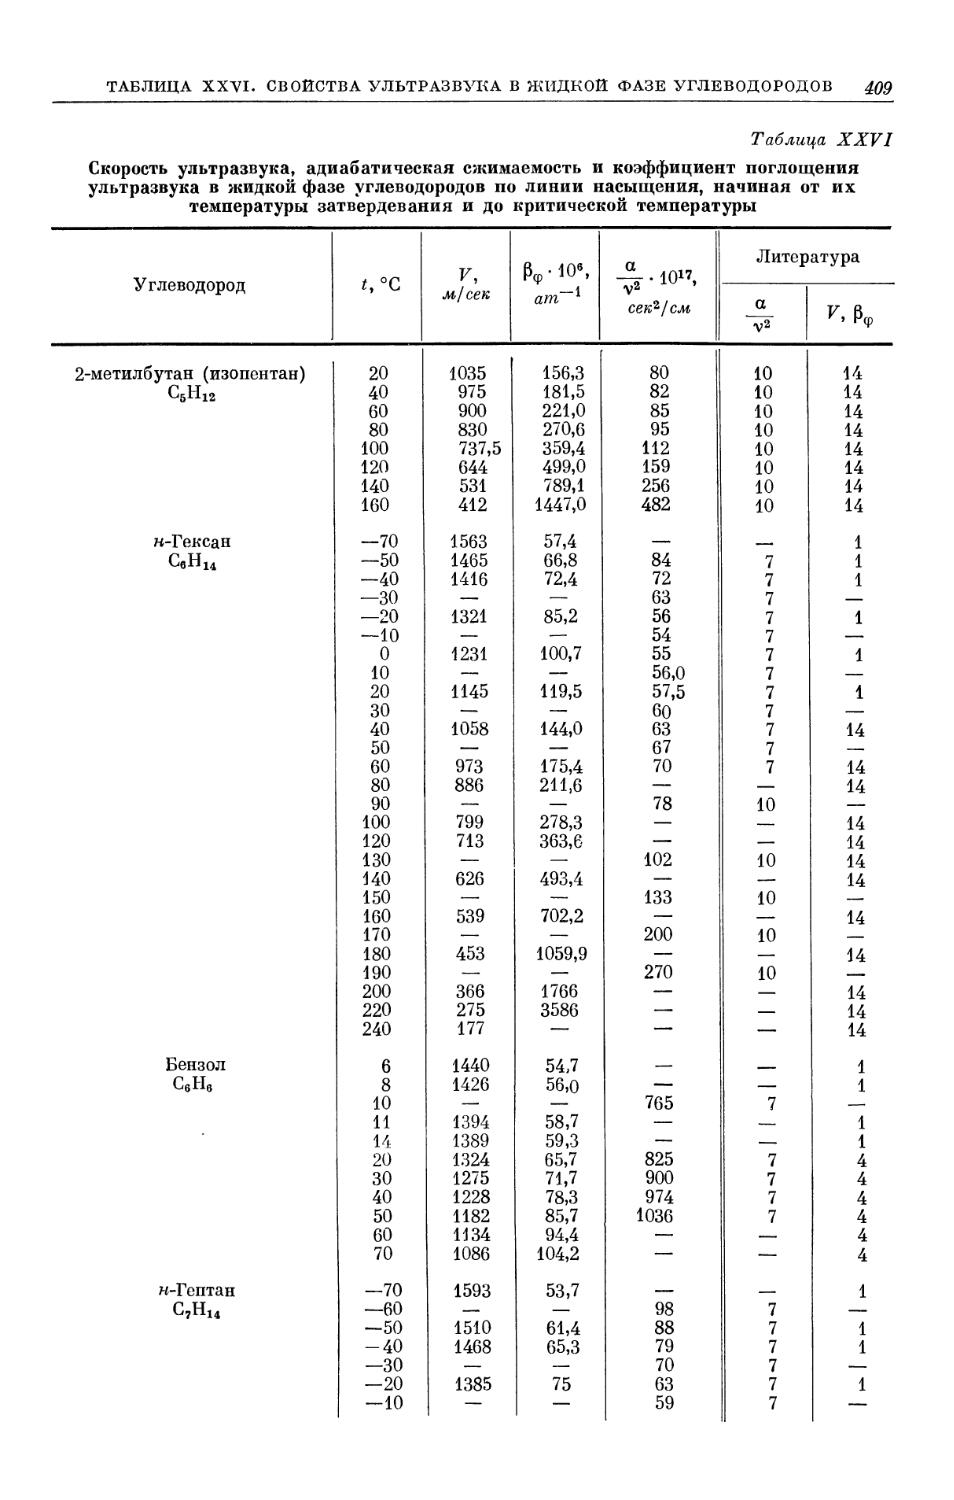 Таблица XXVI. Скорость ультразвука, адиабатическая сжимаемость и коэффициент поглощения ультразвука в жидкой фазе углеводородов по линии насыщения начиная от их температуры затвердевания и до критической температуры